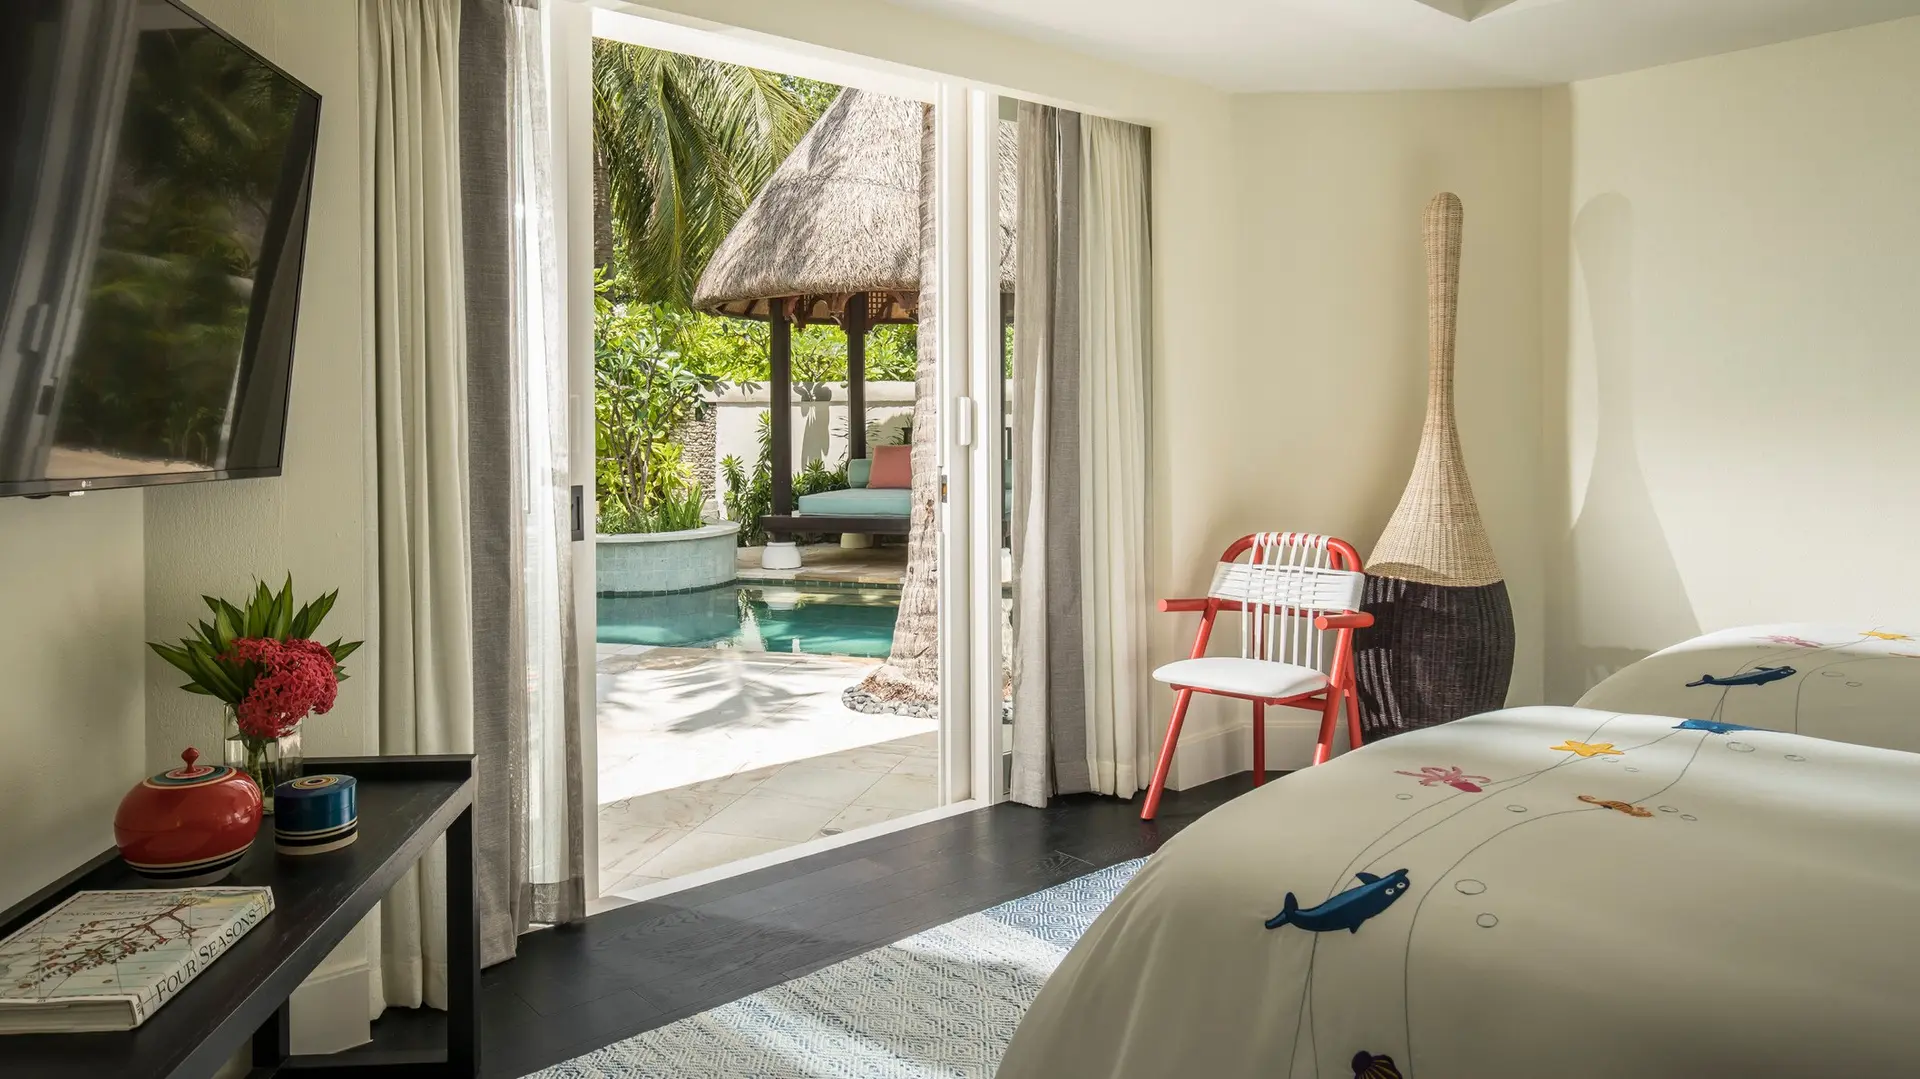 Hotel review Accommodation' - Four Seasons Resort Maldives at Kuda Huraa - 3